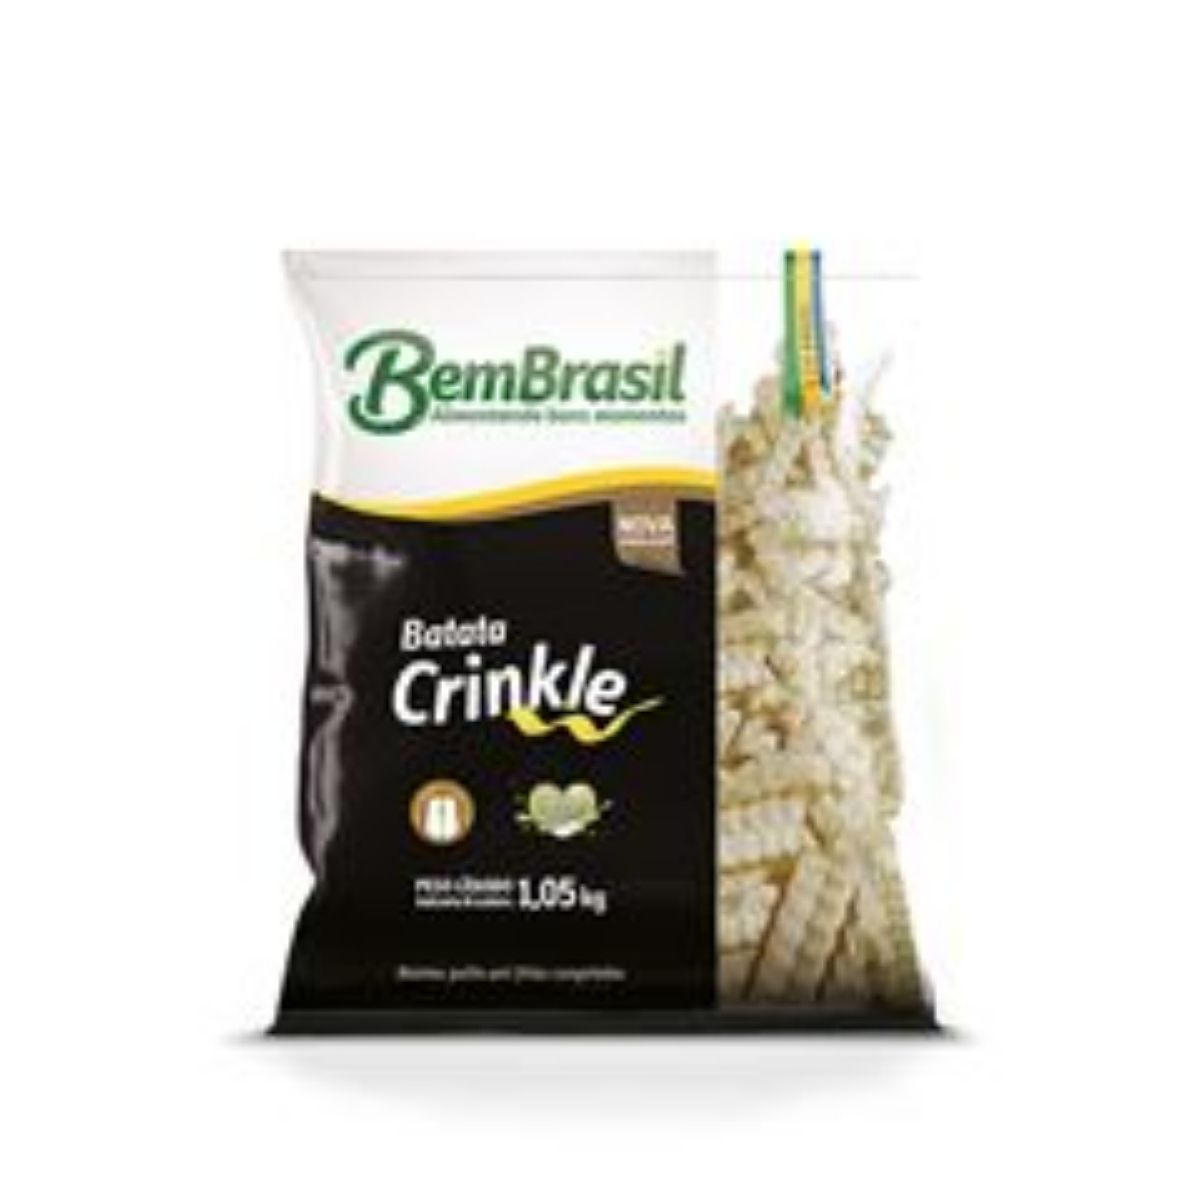 batata-cong-bem-brasil-crinckle-2kg-1.jpg